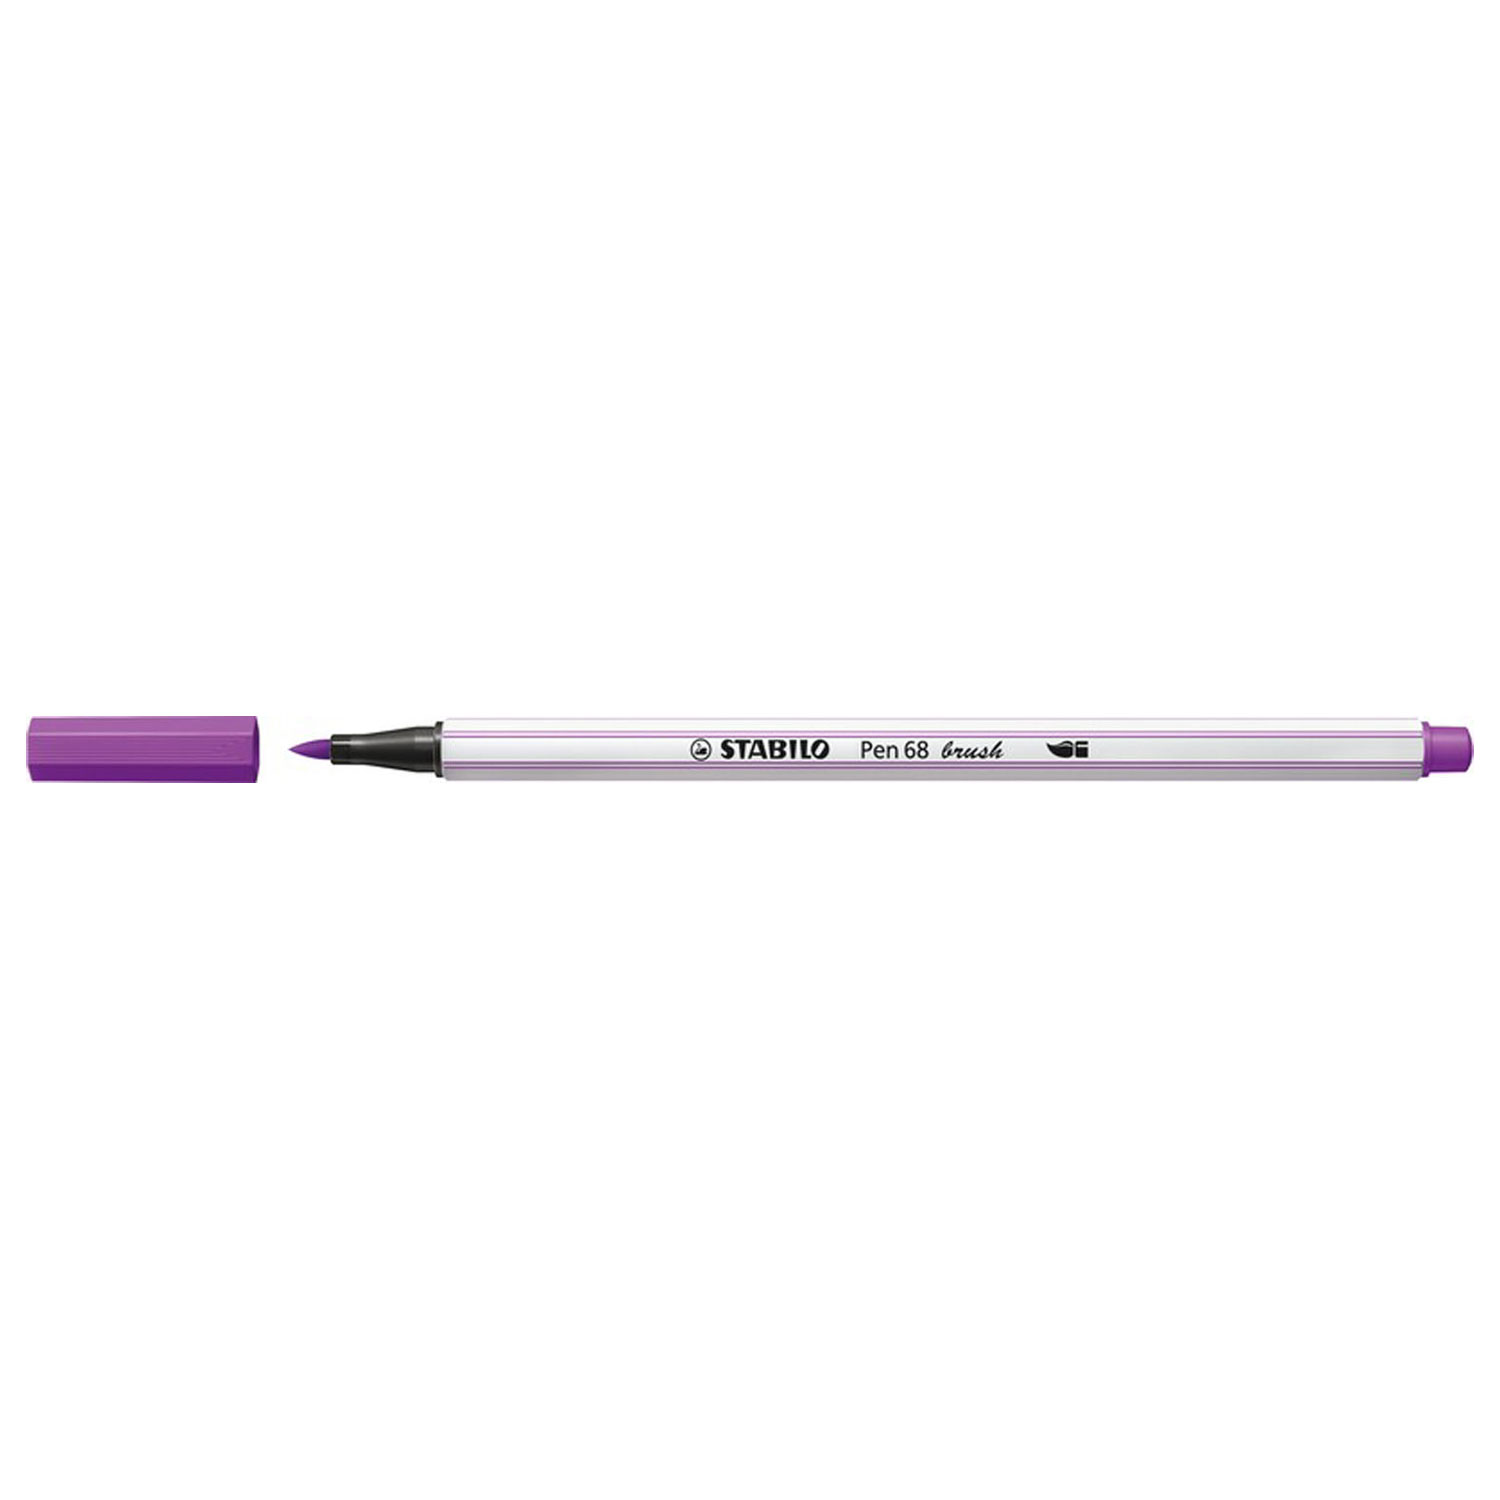 STABILO Pen 68 Brush - Viltstift - Lila (58)